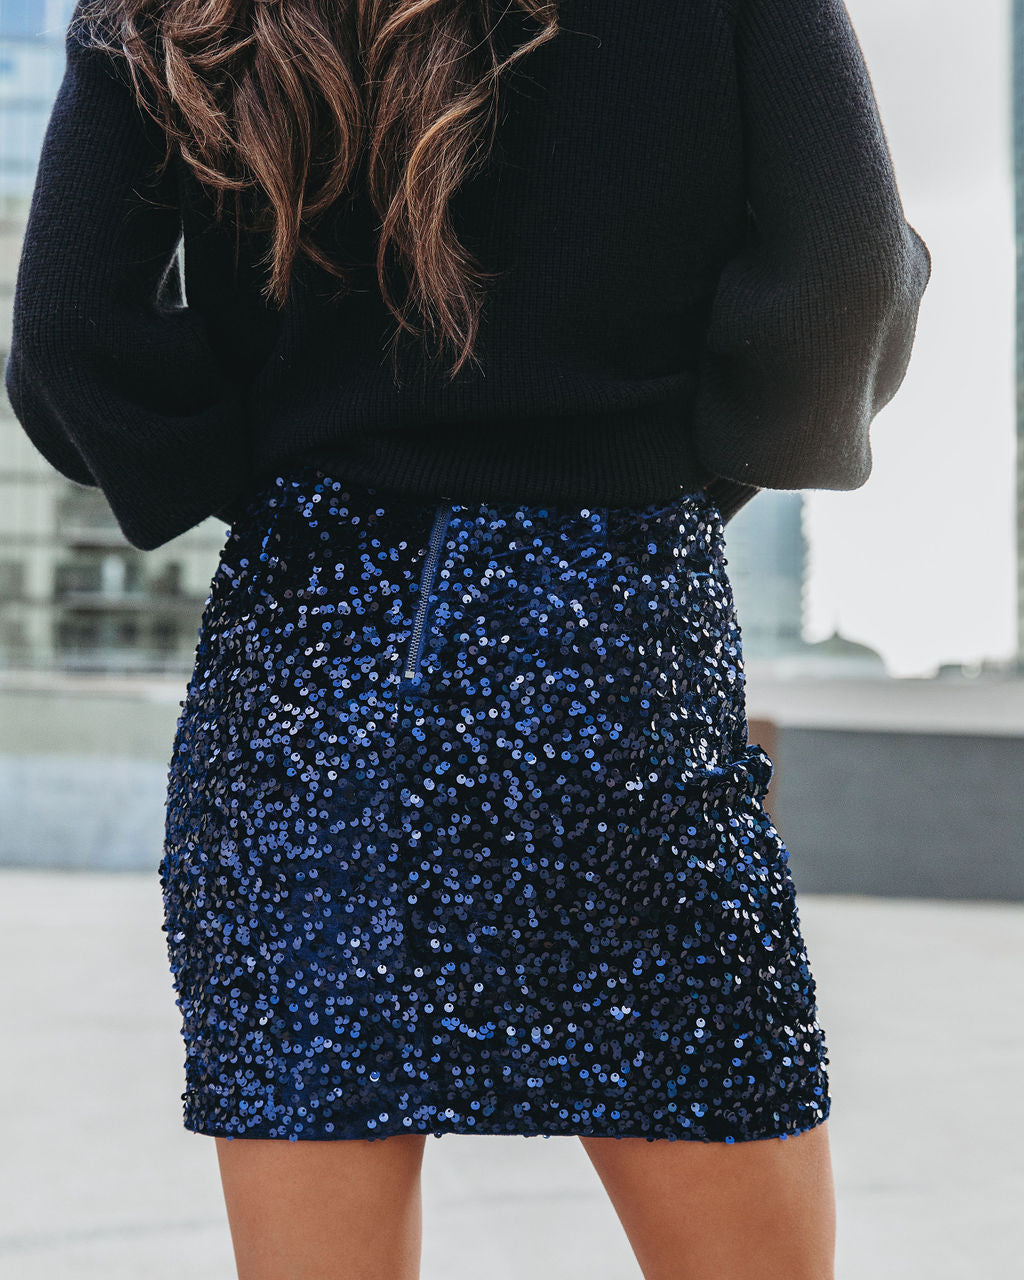 Viva La Vida Sequin Velvet Mini Skirt - Midnight Blue Oshnow